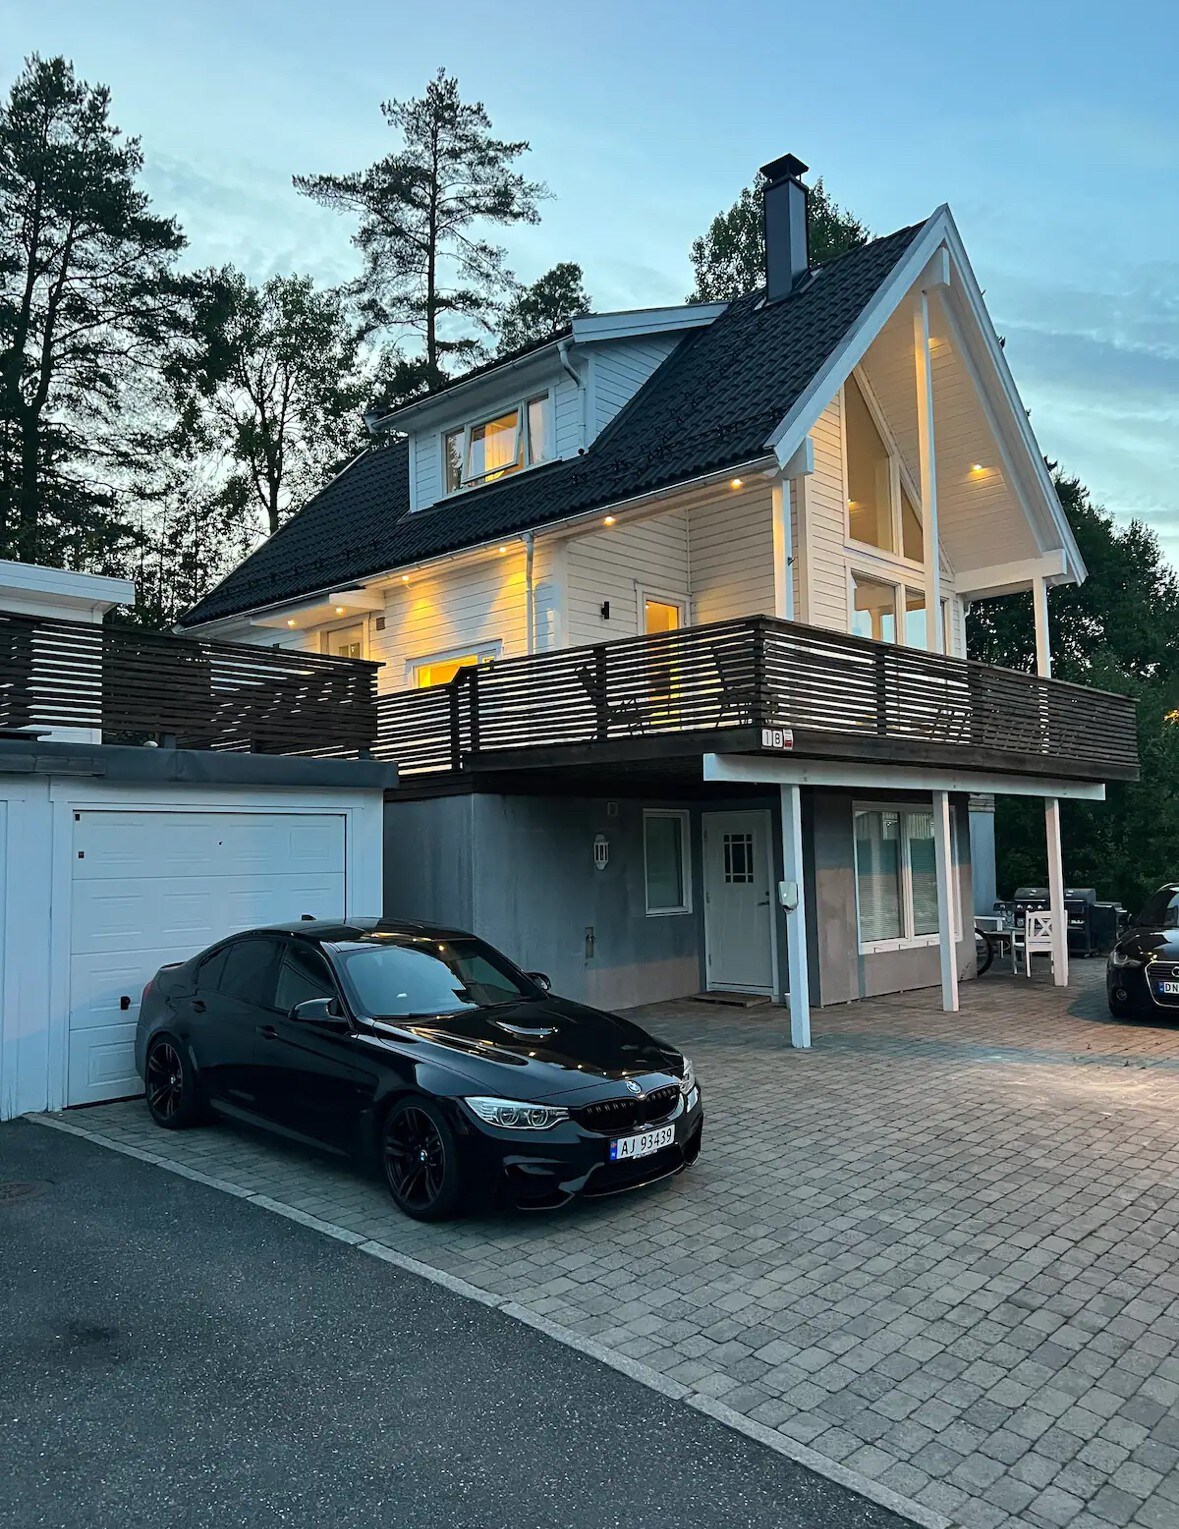 Toroms leilighet i Askim med egen parkering.